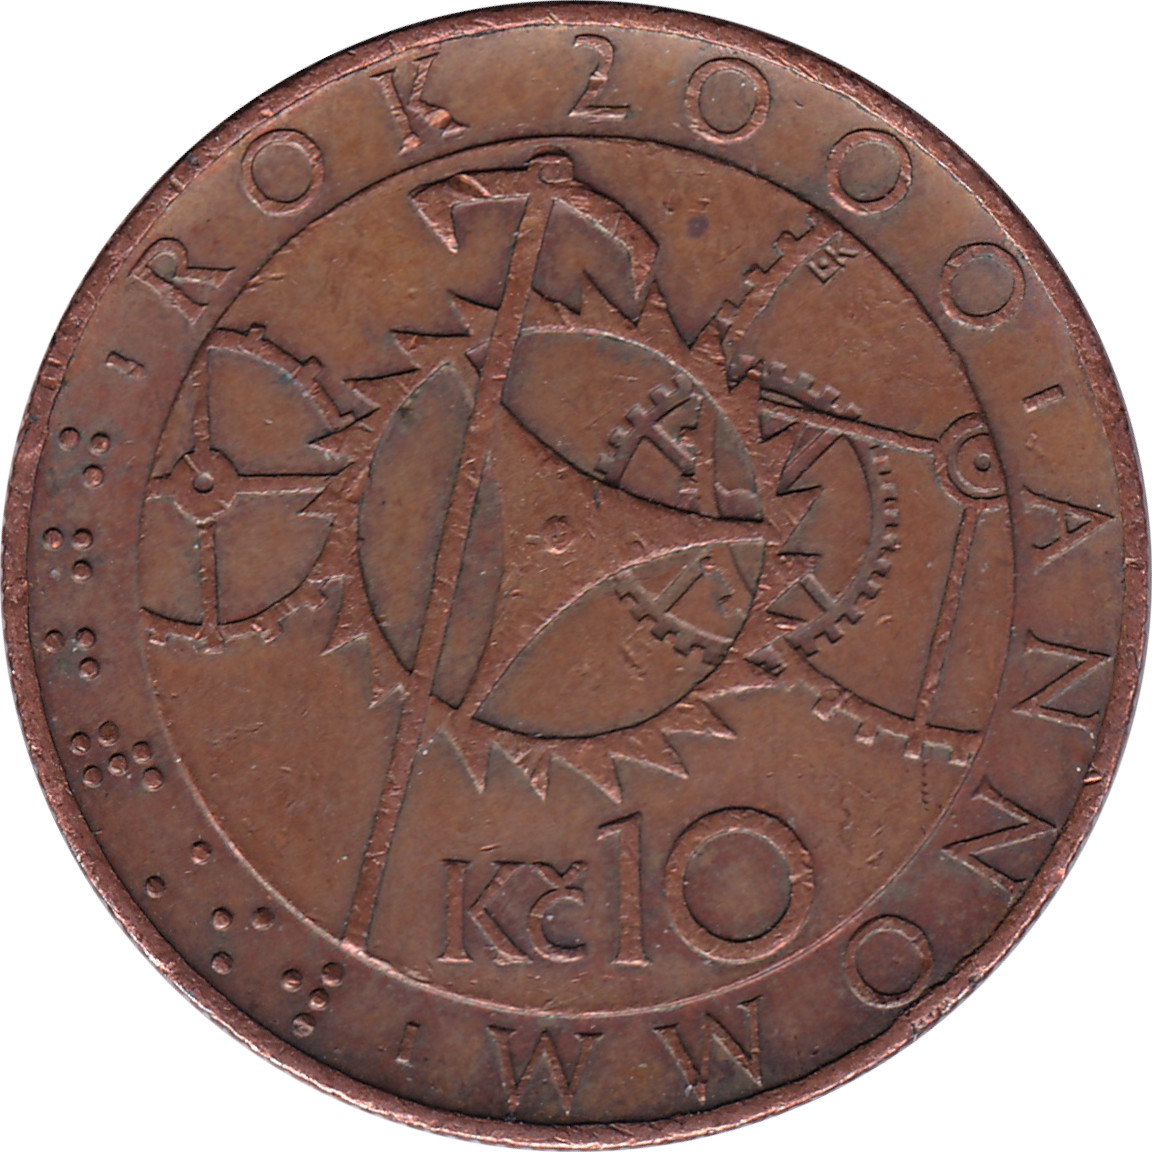 10 korun - An 2000